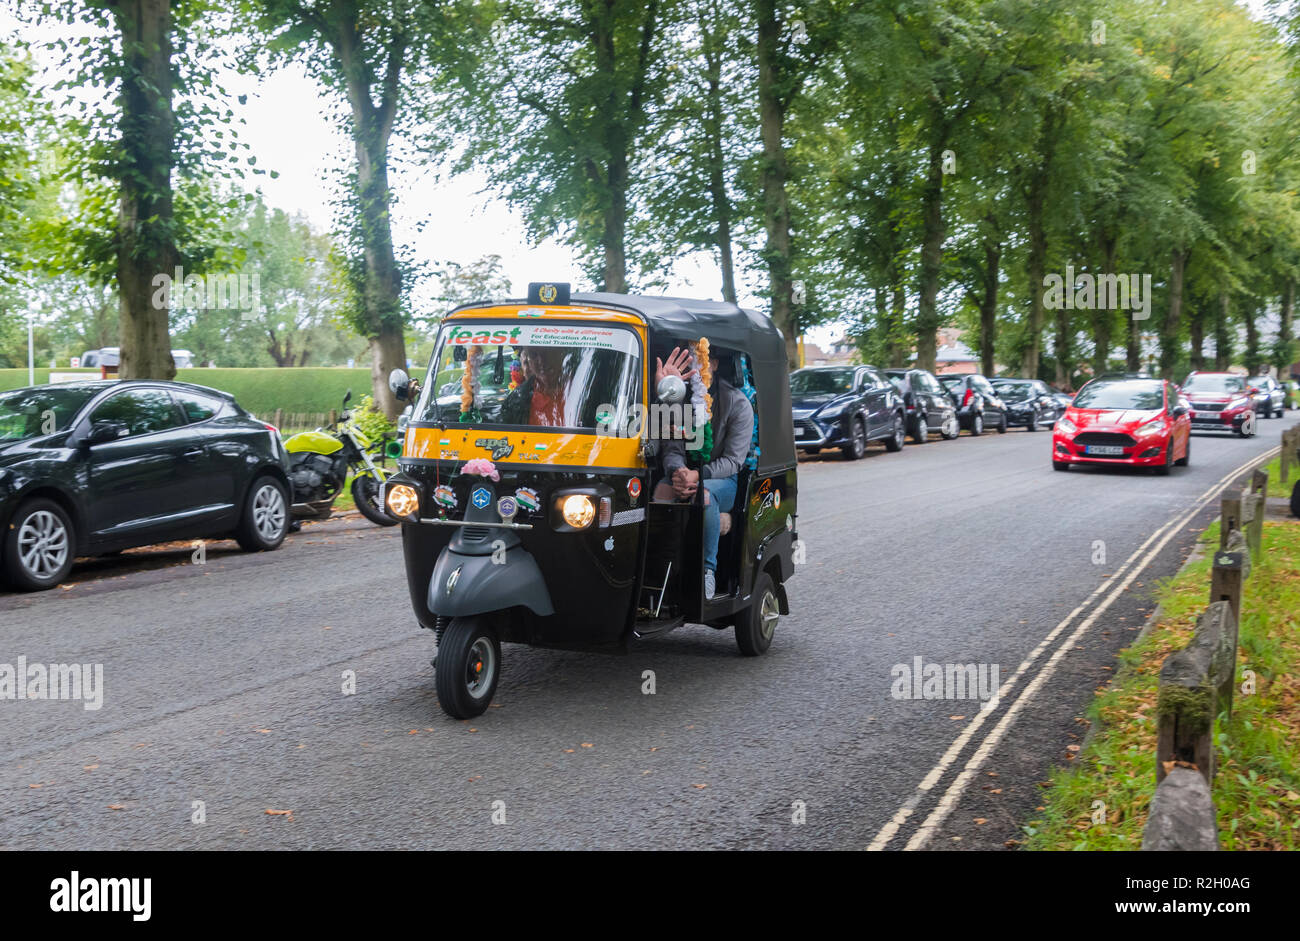 Les personnes ayant un tour dans un Piaggio Ape City 3 chariot (communément appelé un Tuk Tuk) de véhicule à Arundel, West Sussex, UK. Banque D'Images